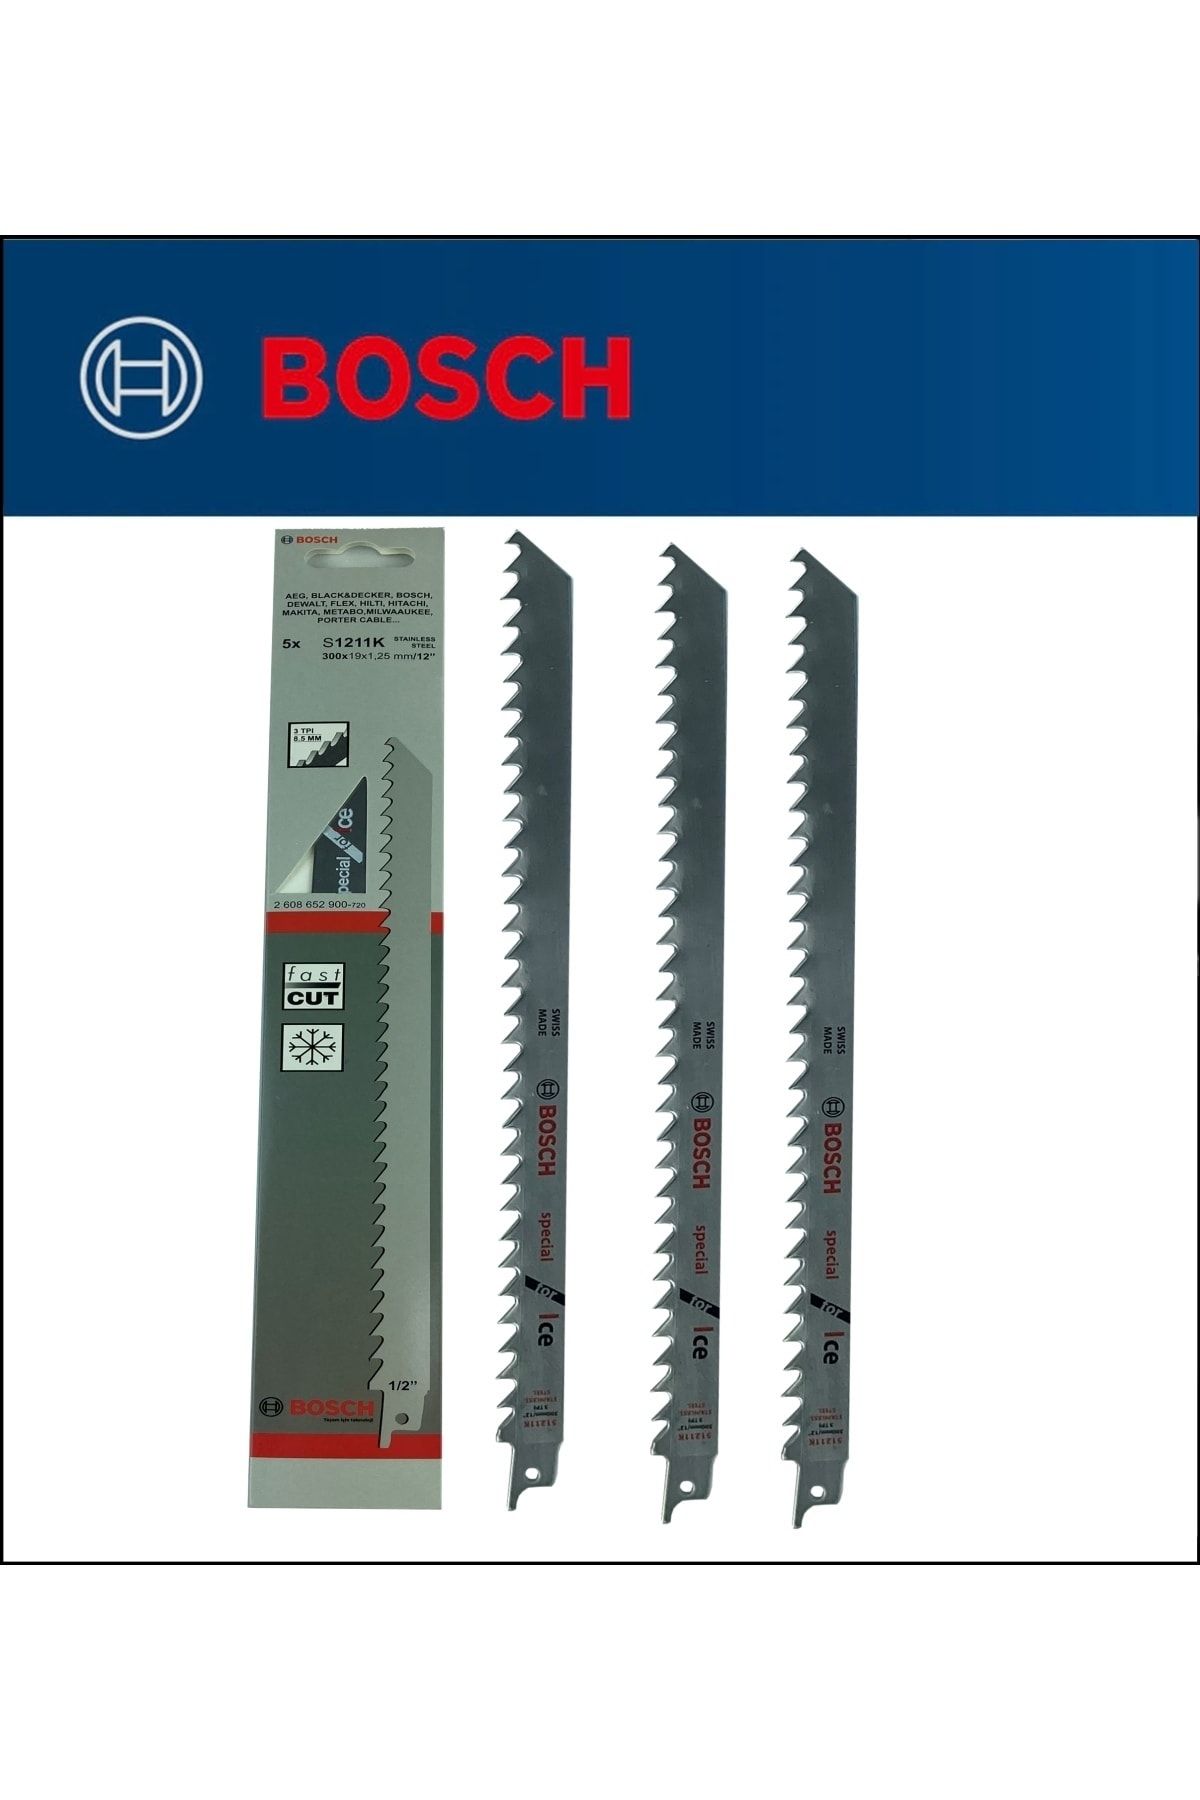 Bosch - Tilki Kuyruğu Bıçağı S 1211 K - 3 Buz Ve Kemik Kesme 2 608 652 900 3'lü Paket